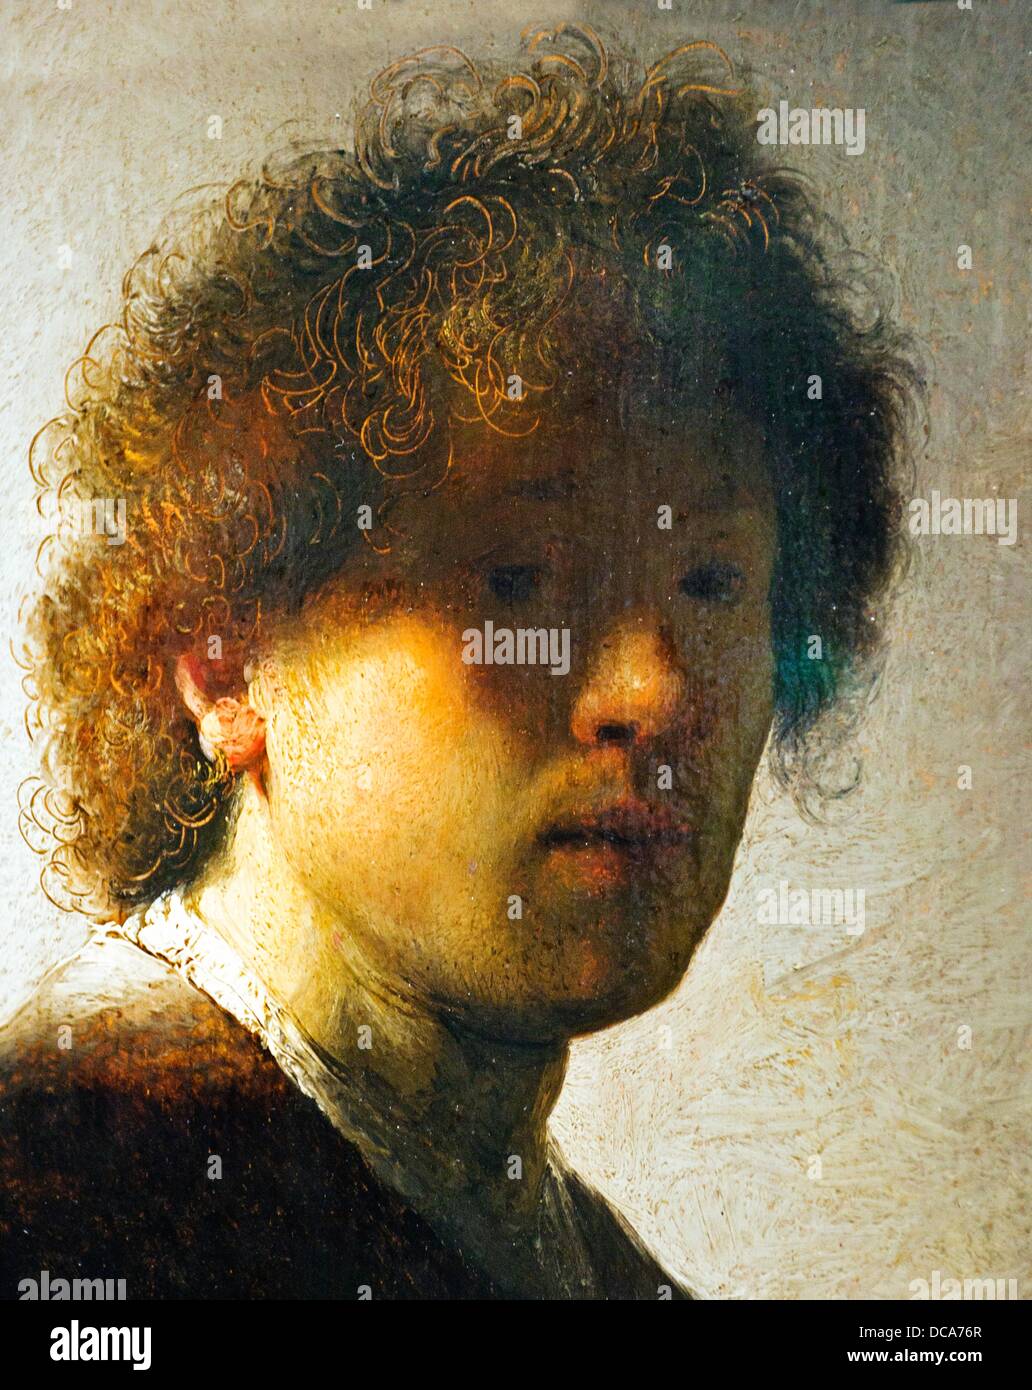 Selbstportrait in einem frühen Alter 1667, Rembrandt Rijn van Rijn 1606-1669 niederländischen Öl auf Leinwand, Rijksmuseum, Rijksmuseum, Stockfoto